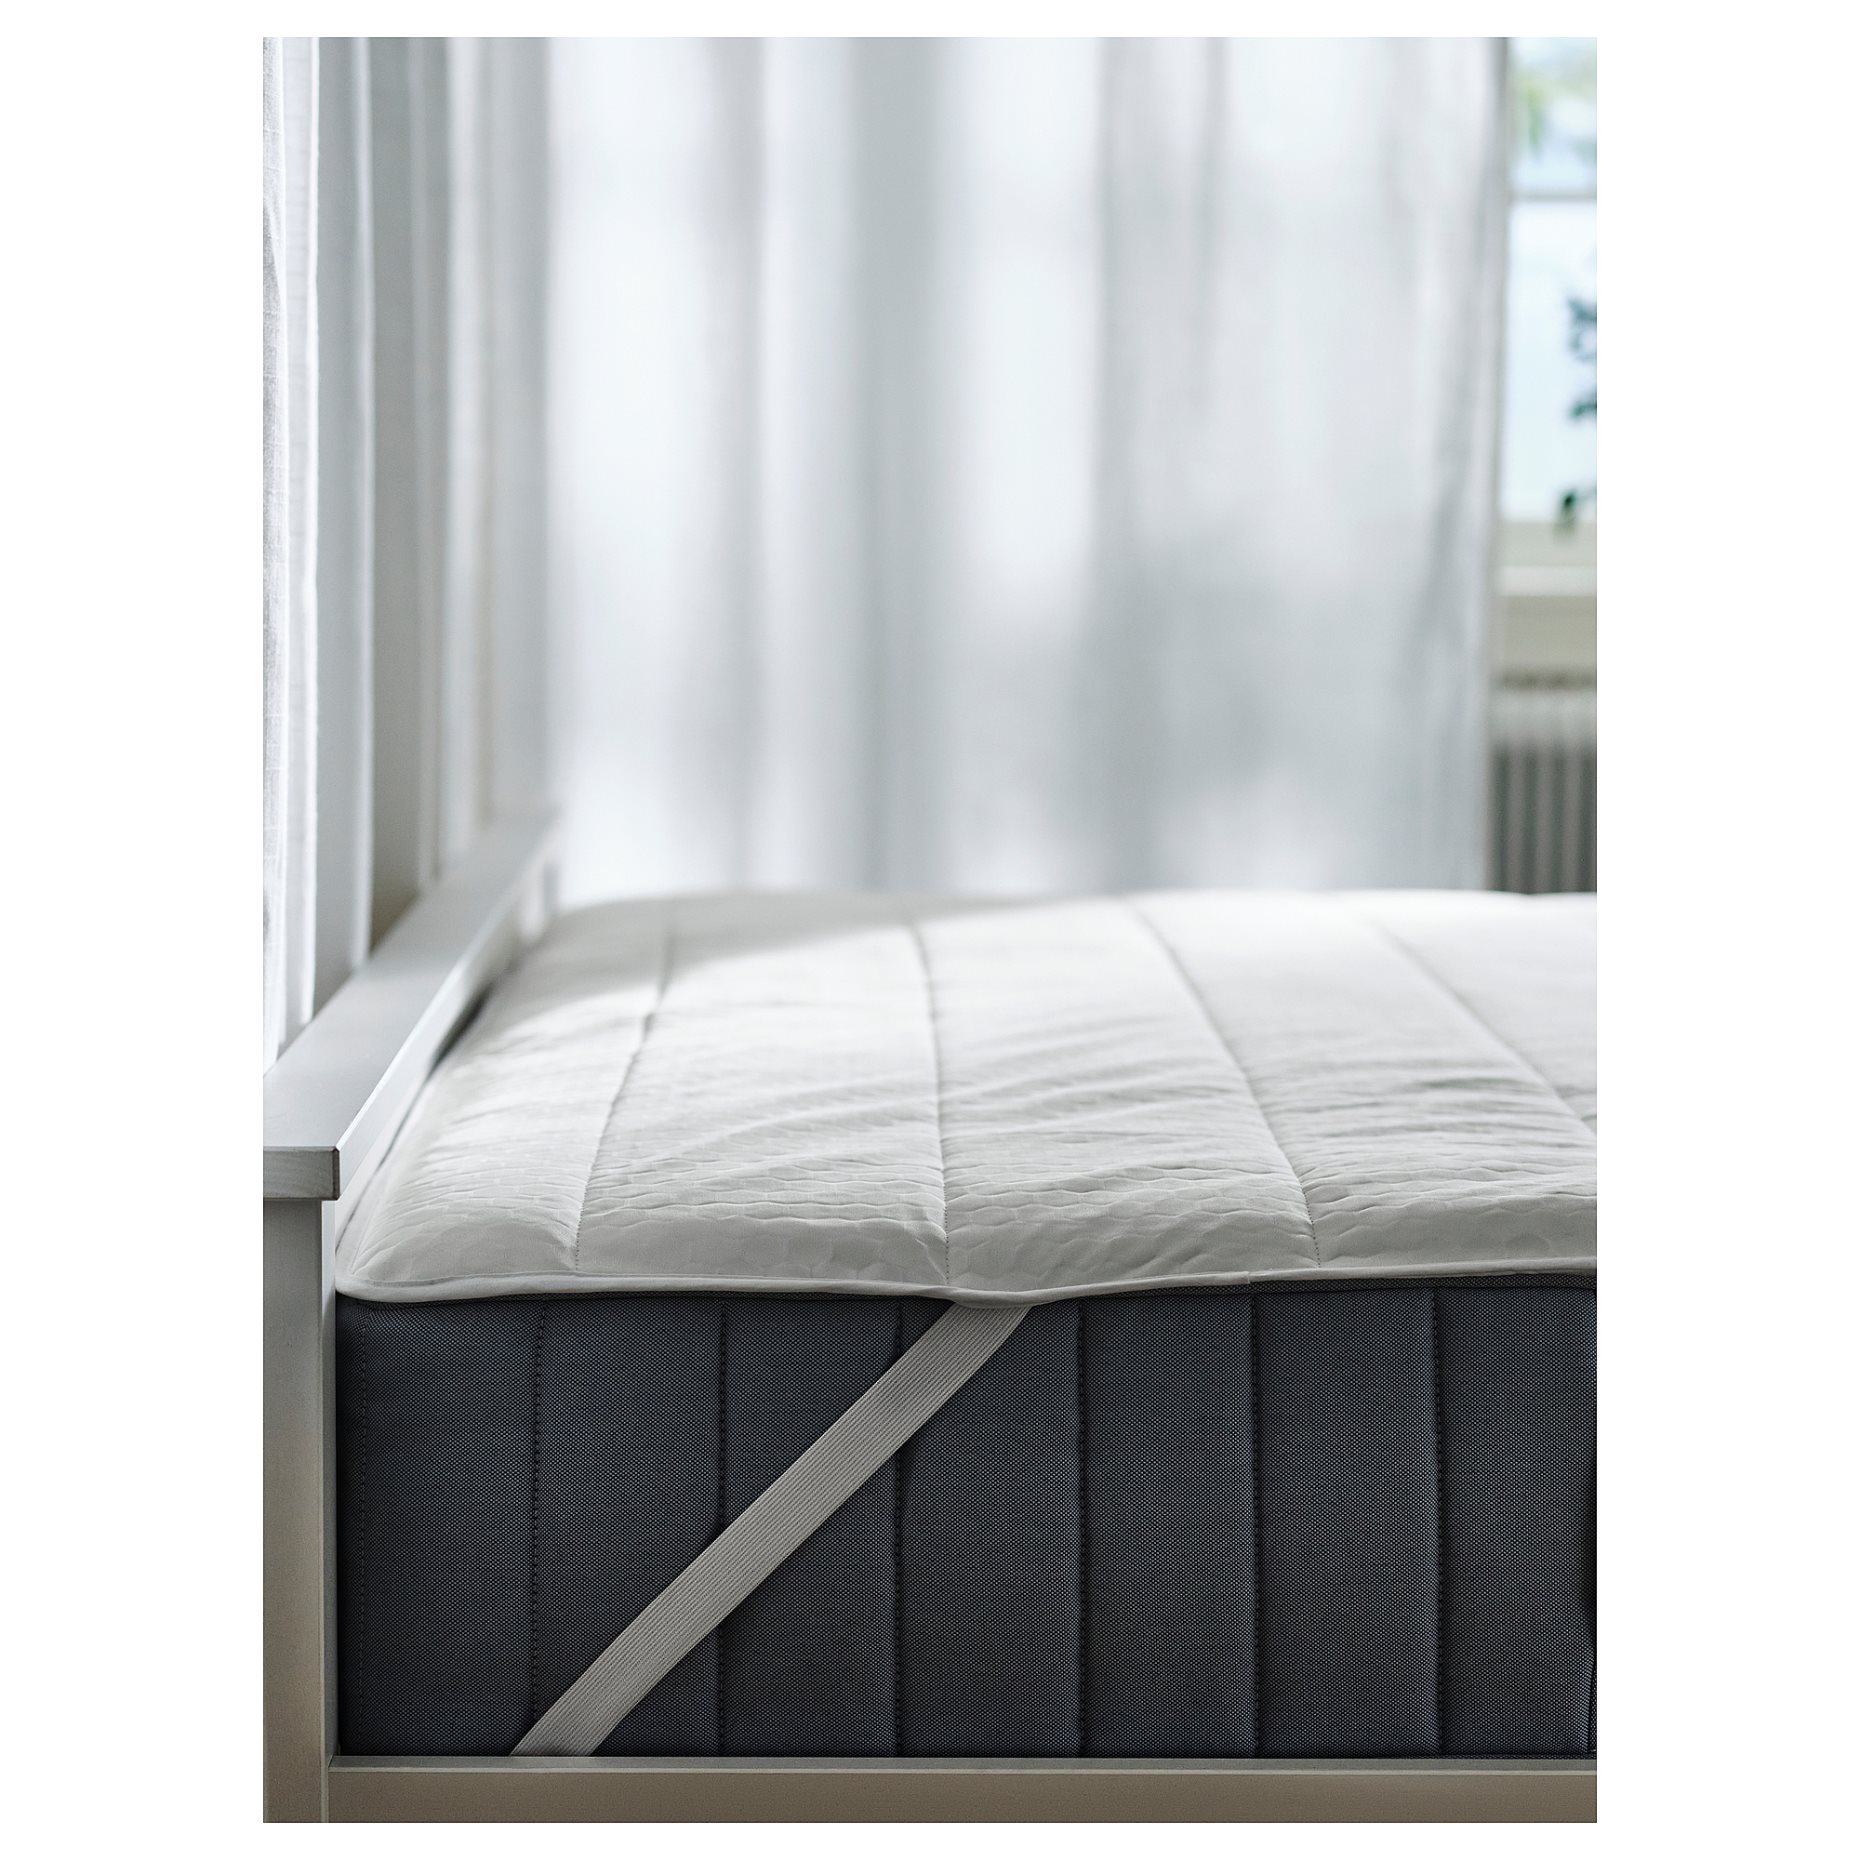 ROSENVIAL, mattress protector, 90x200 cm, 805.308.64